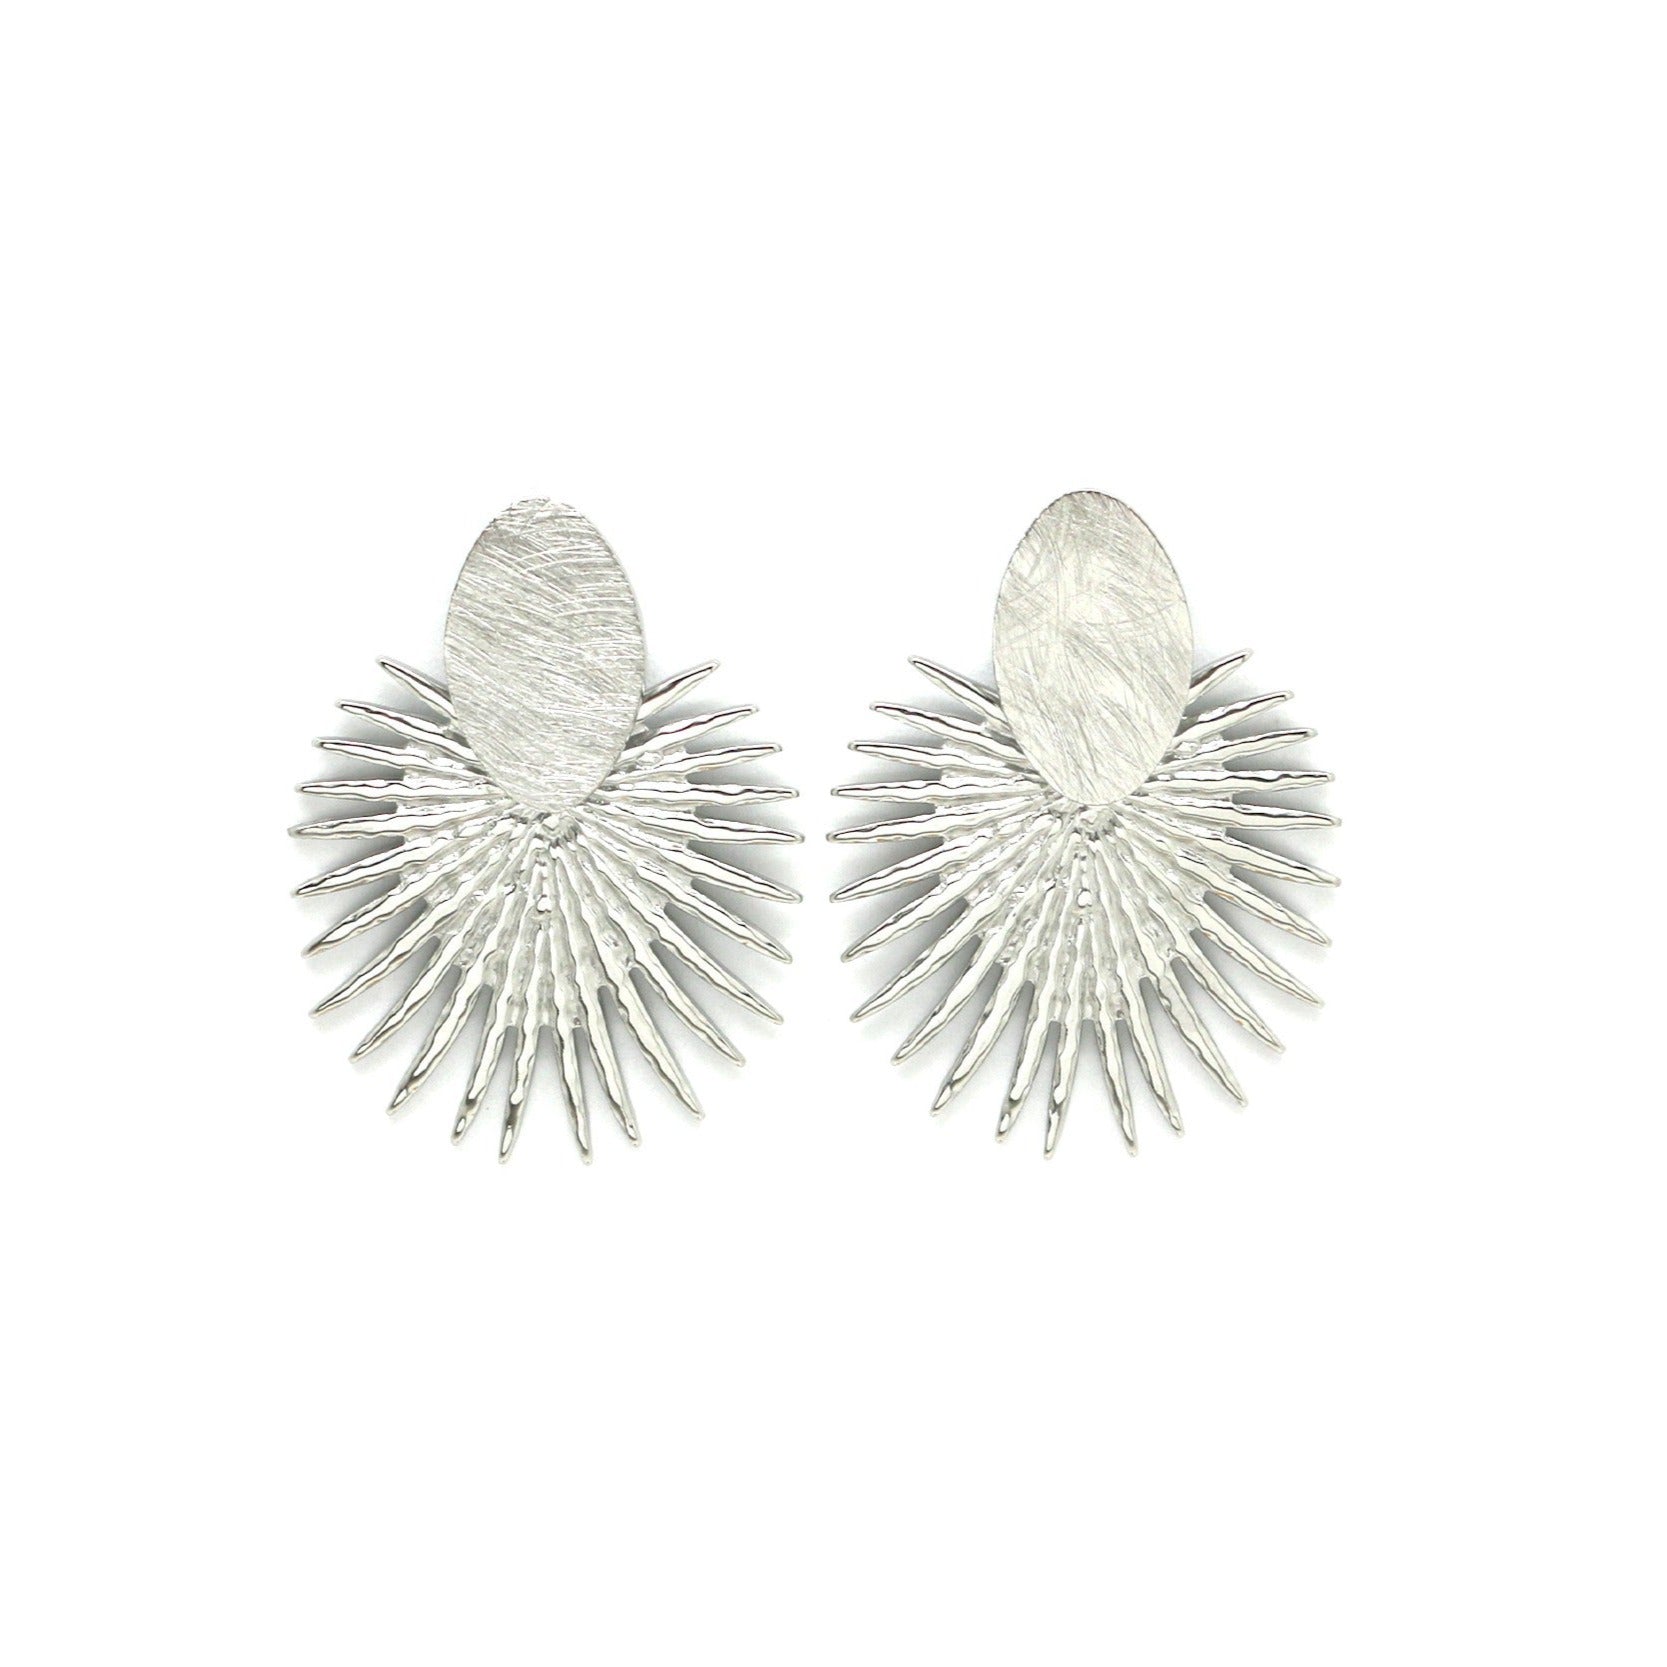 Large silver sun oval earrings